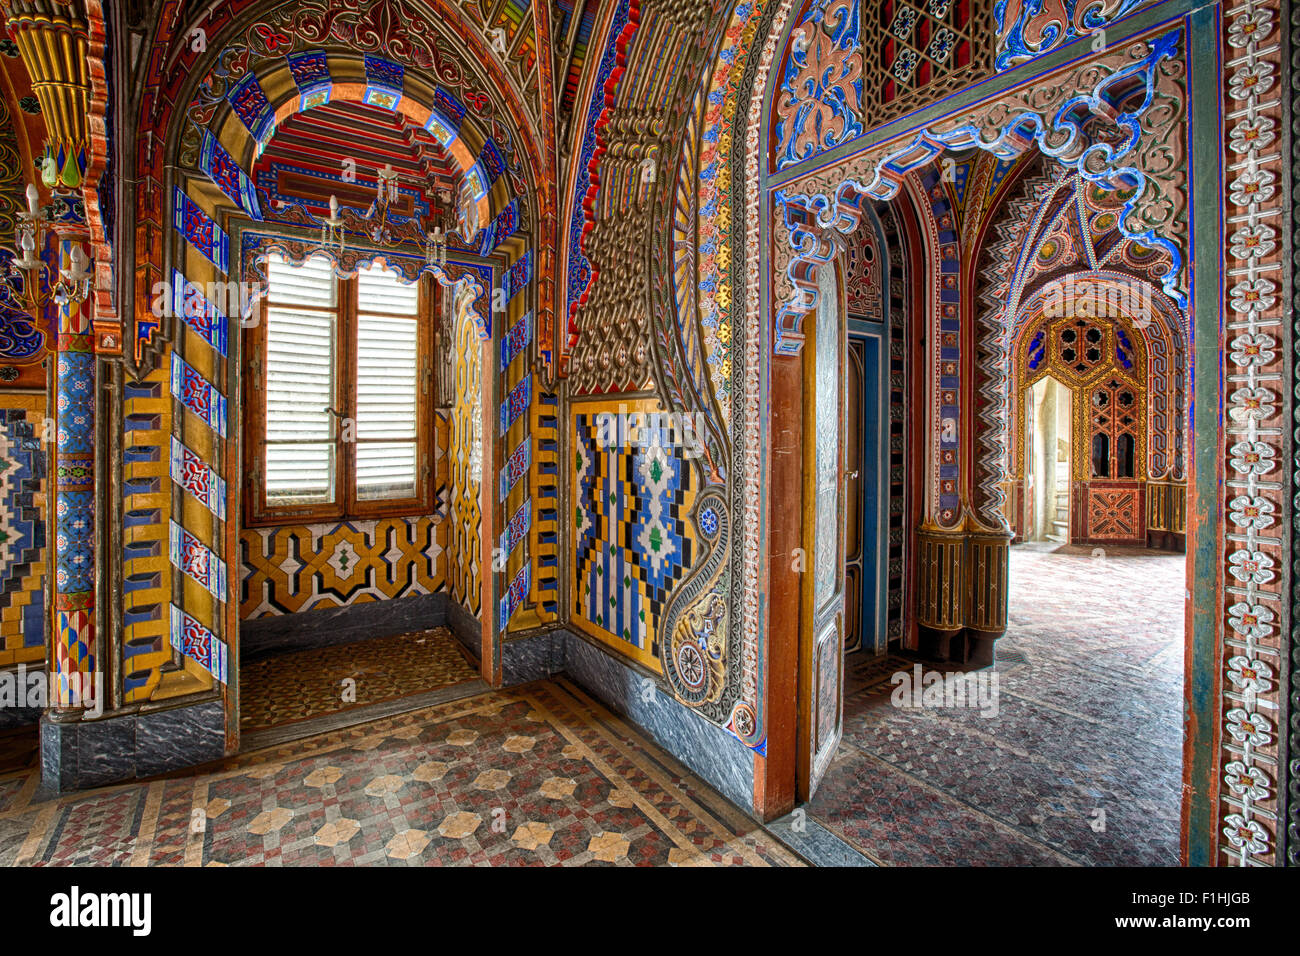 La arquitectura interior del palacio de estilo morisco de 1001 noches con decoración de fantasía Foto de stock